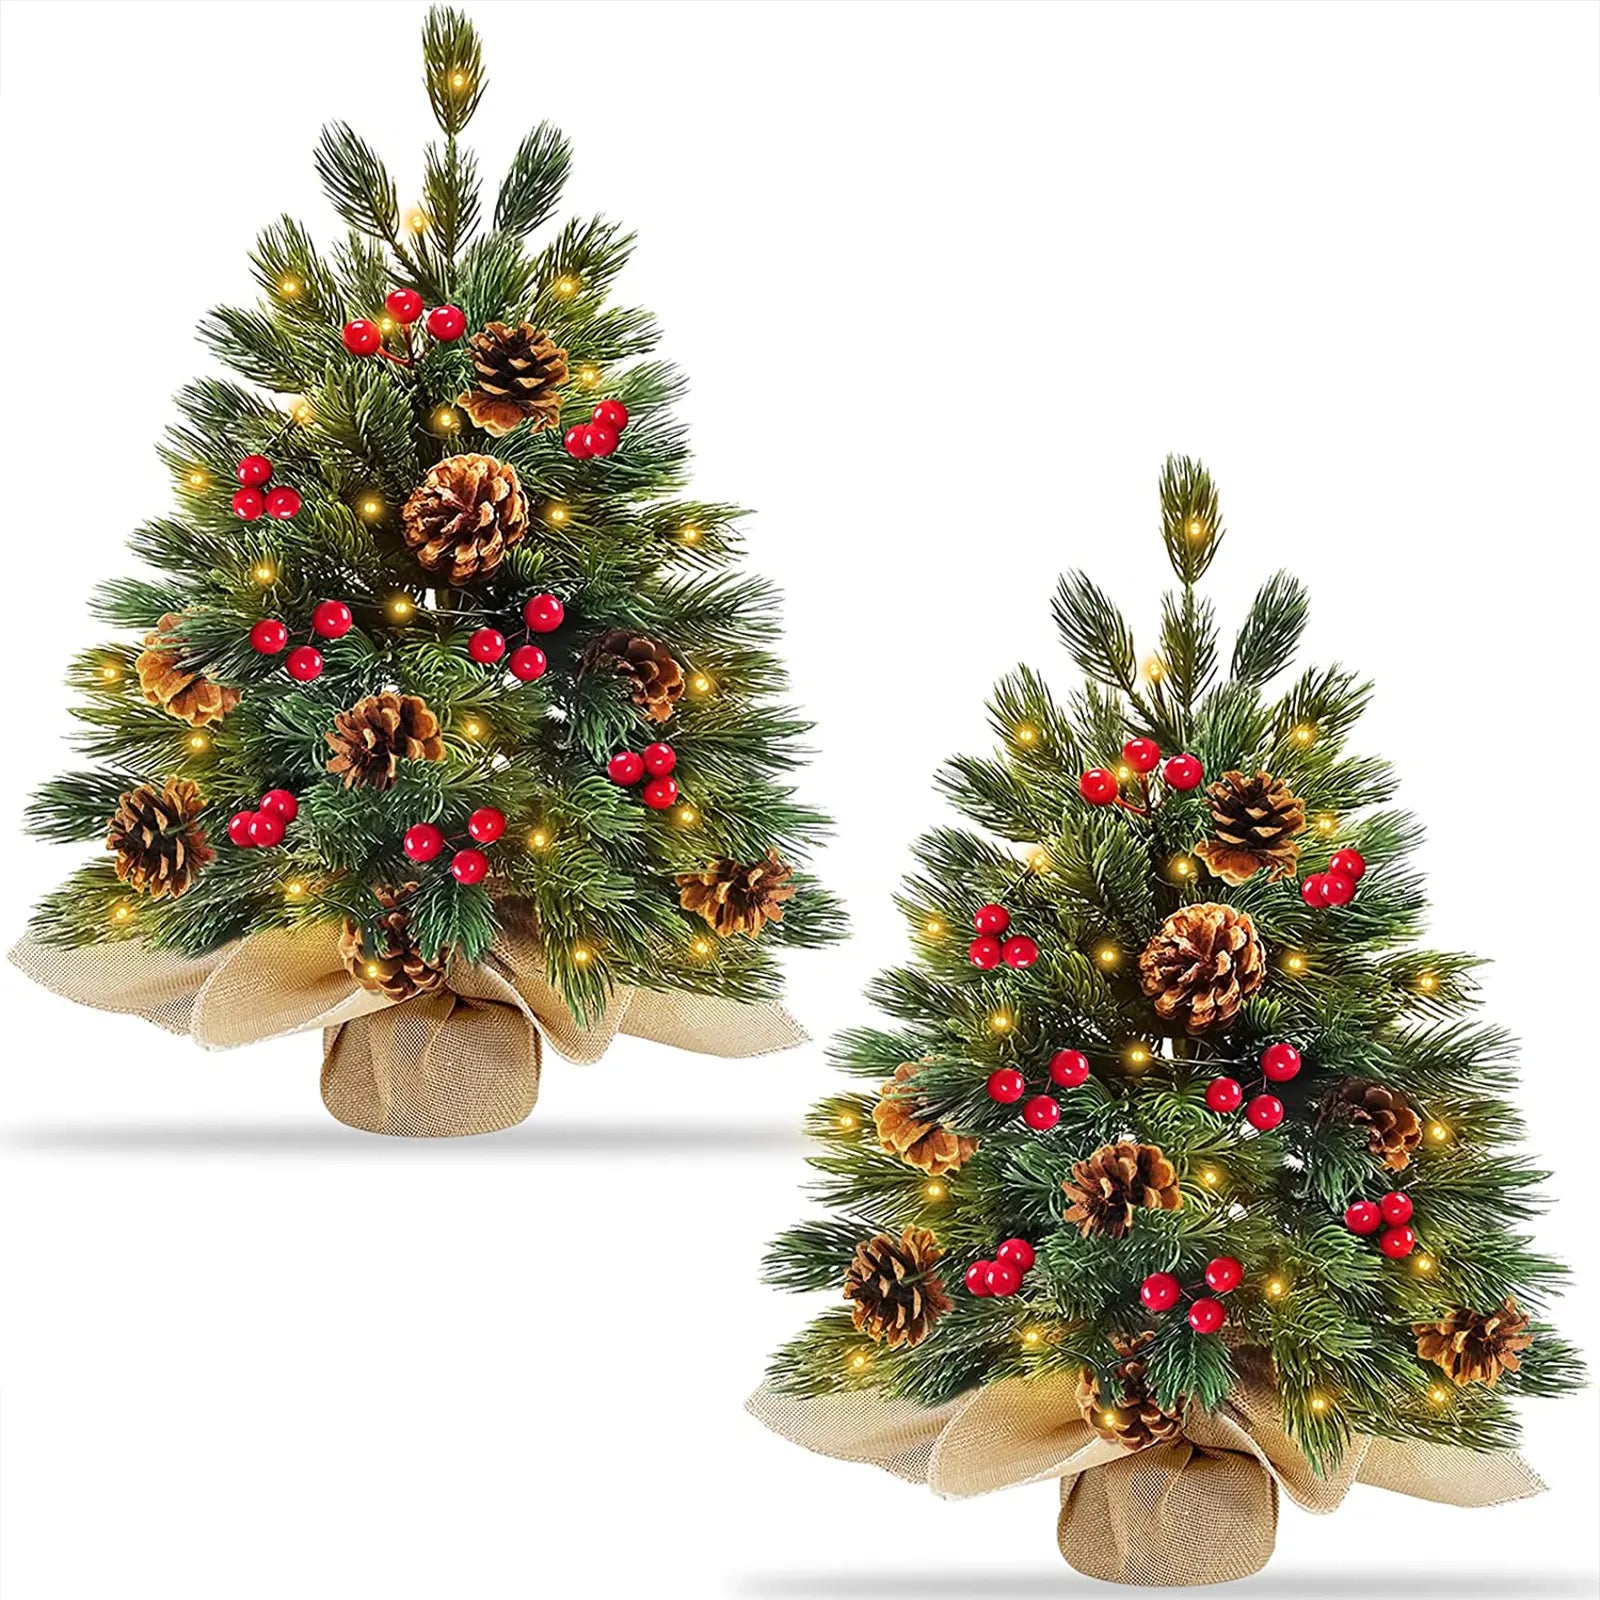 Paquete de 2 decoraciones para árbol de Navidad de mesa preiluminadas súper gruesas de 20 pulgadas